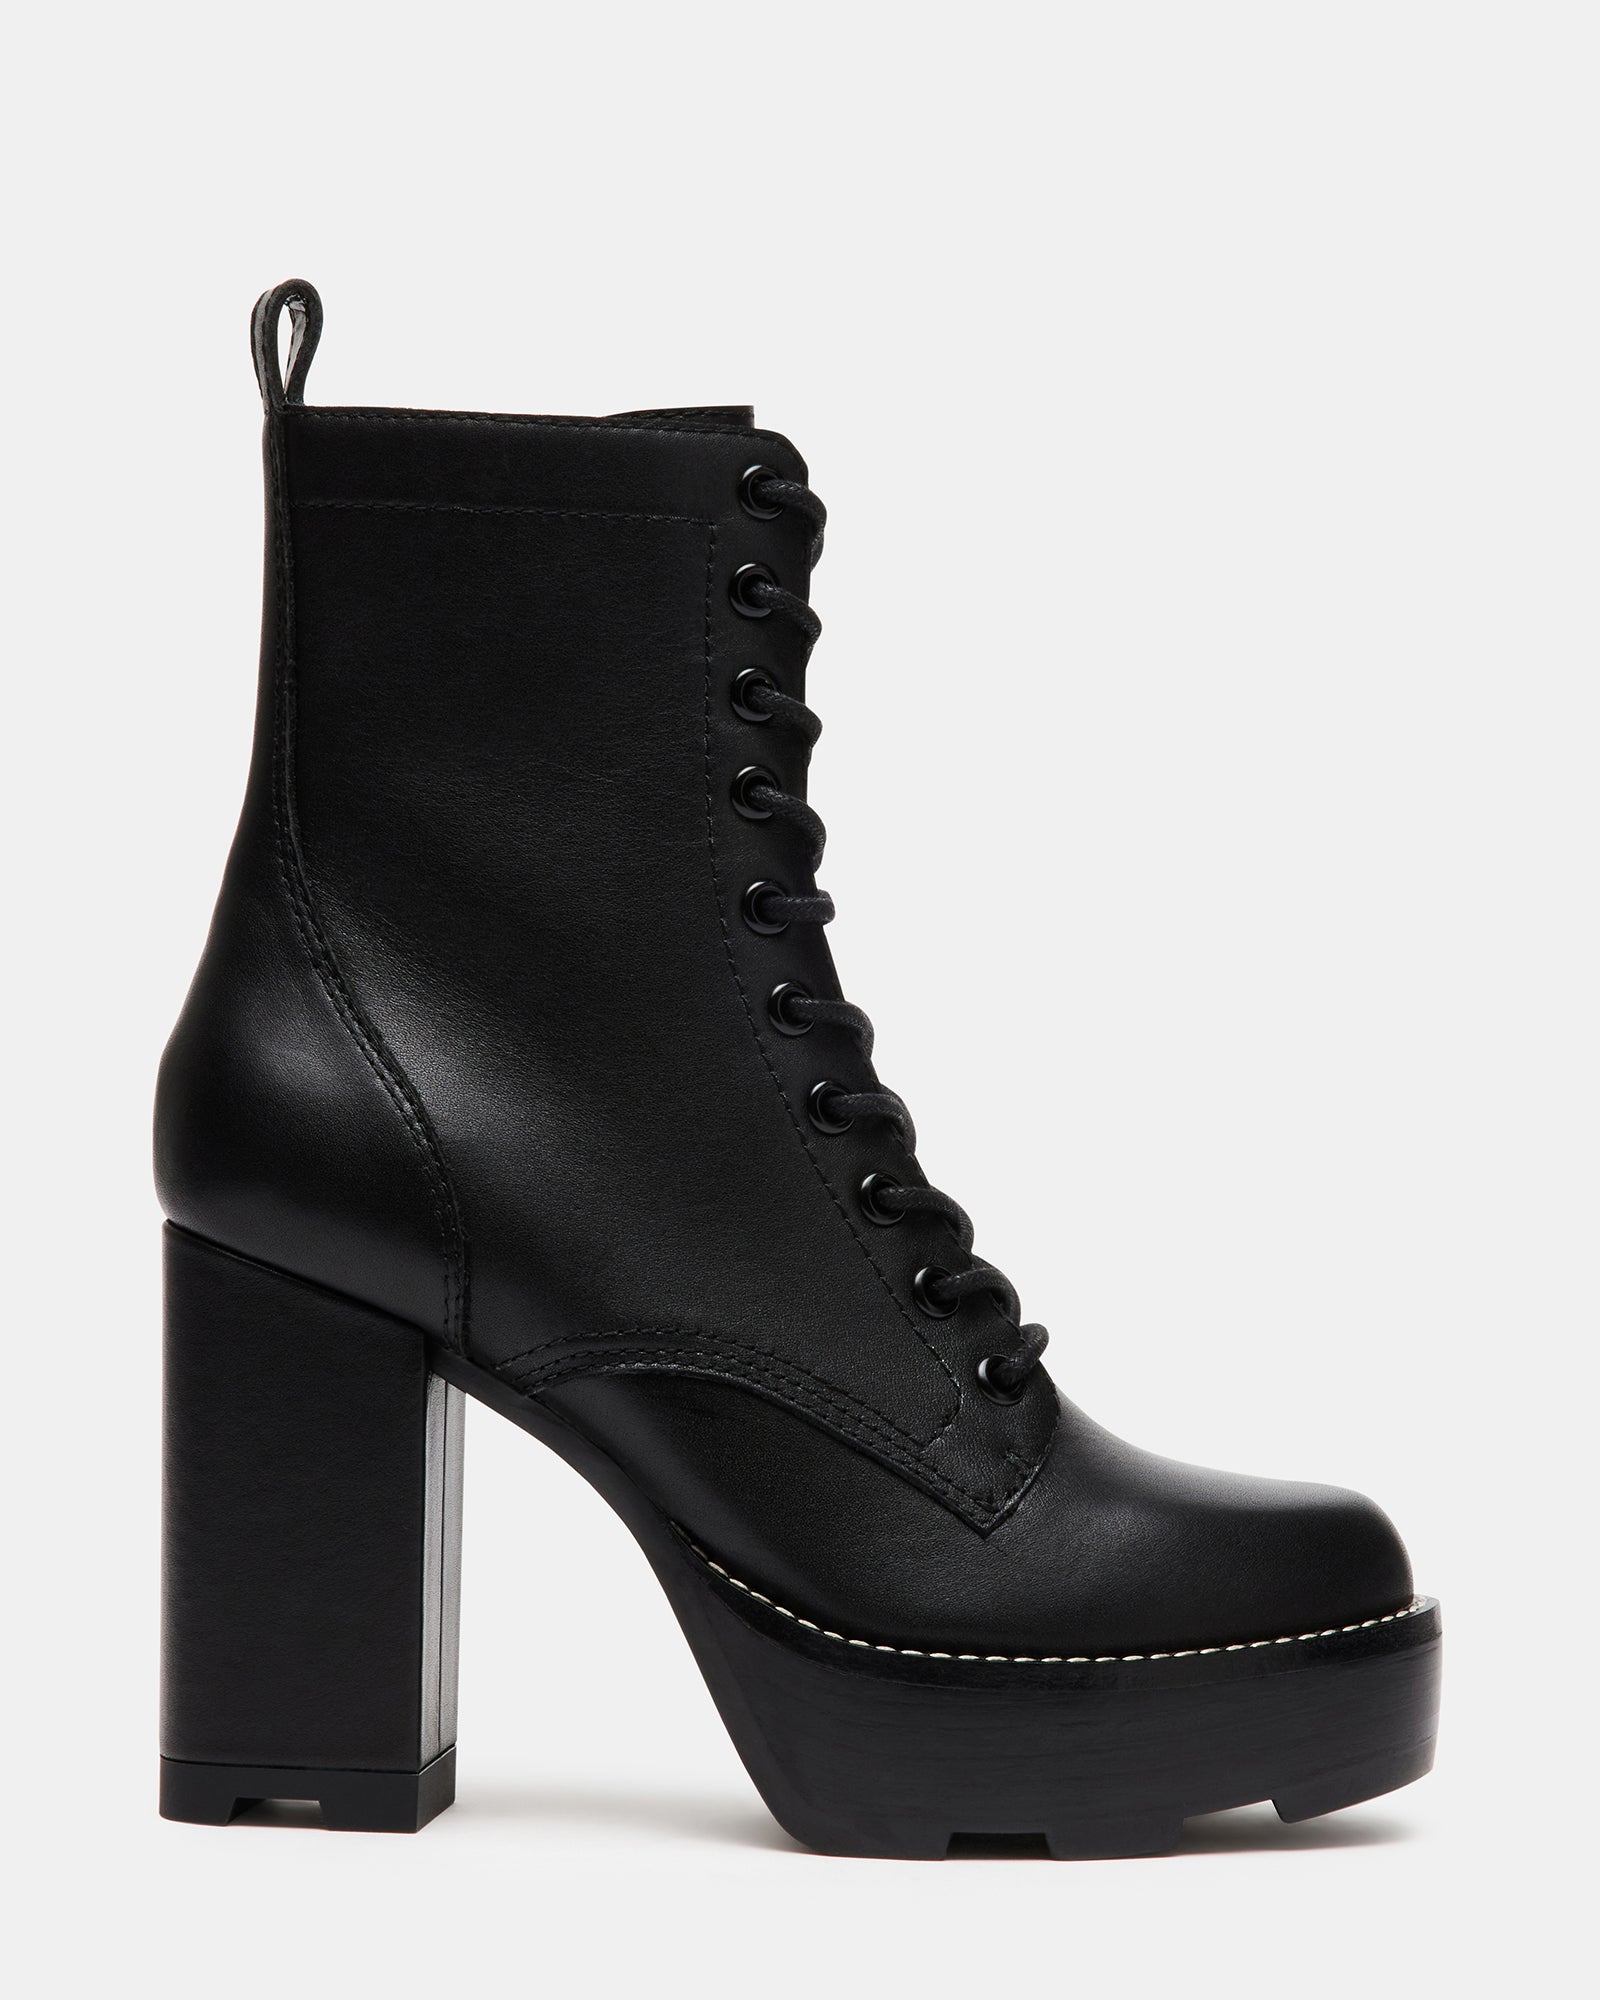 ZELDIE Black Platform Ankle Bootie | Women's Boots & Booties